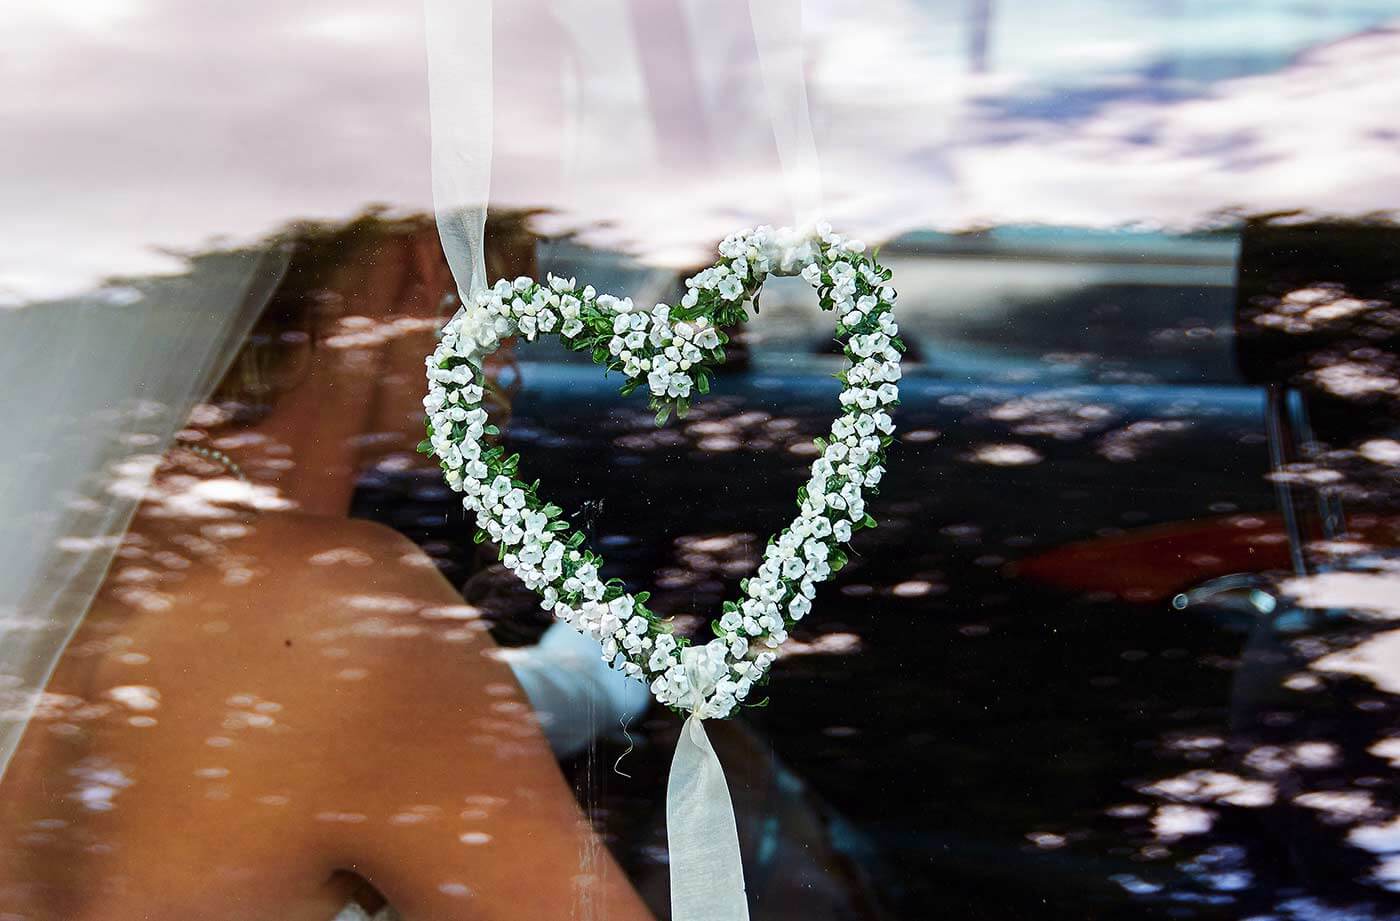 Autoschmuck Hochzeit Herzform  Bildergalerie mit Inspirationen